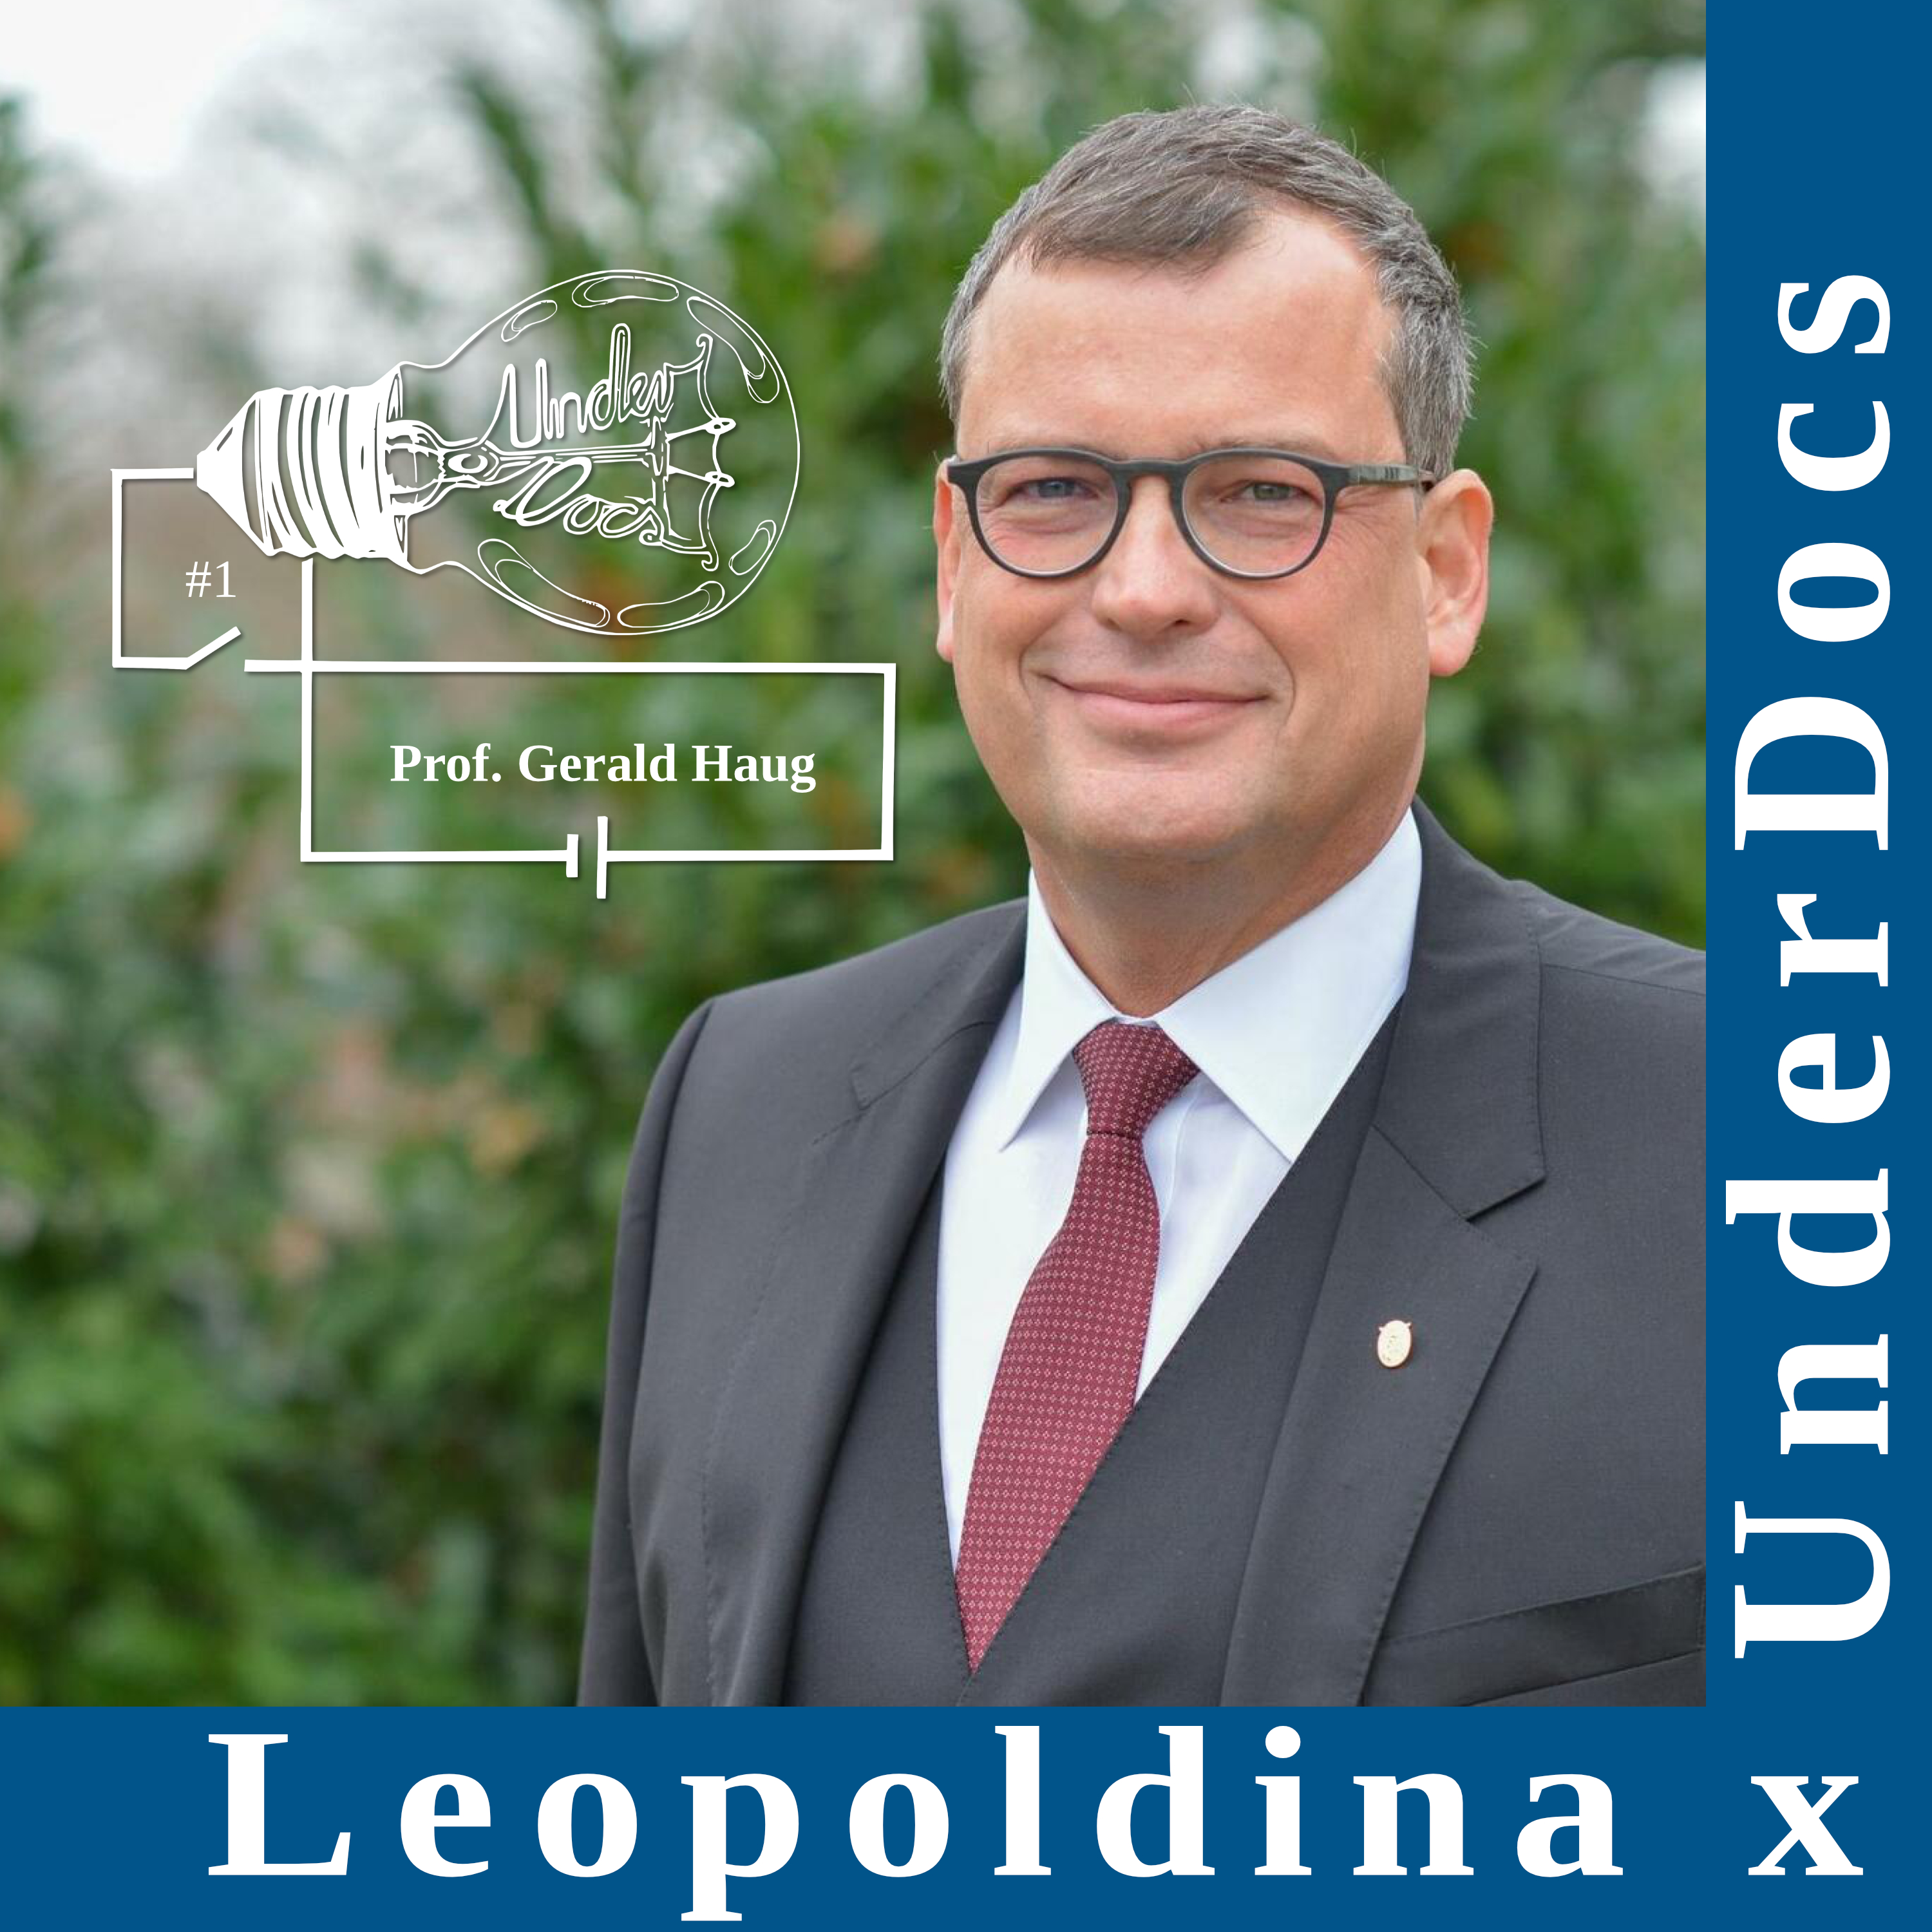 Leopoldina x UnderDocs: Prof. Gerald Haug über seine Faszination Wissenschaft